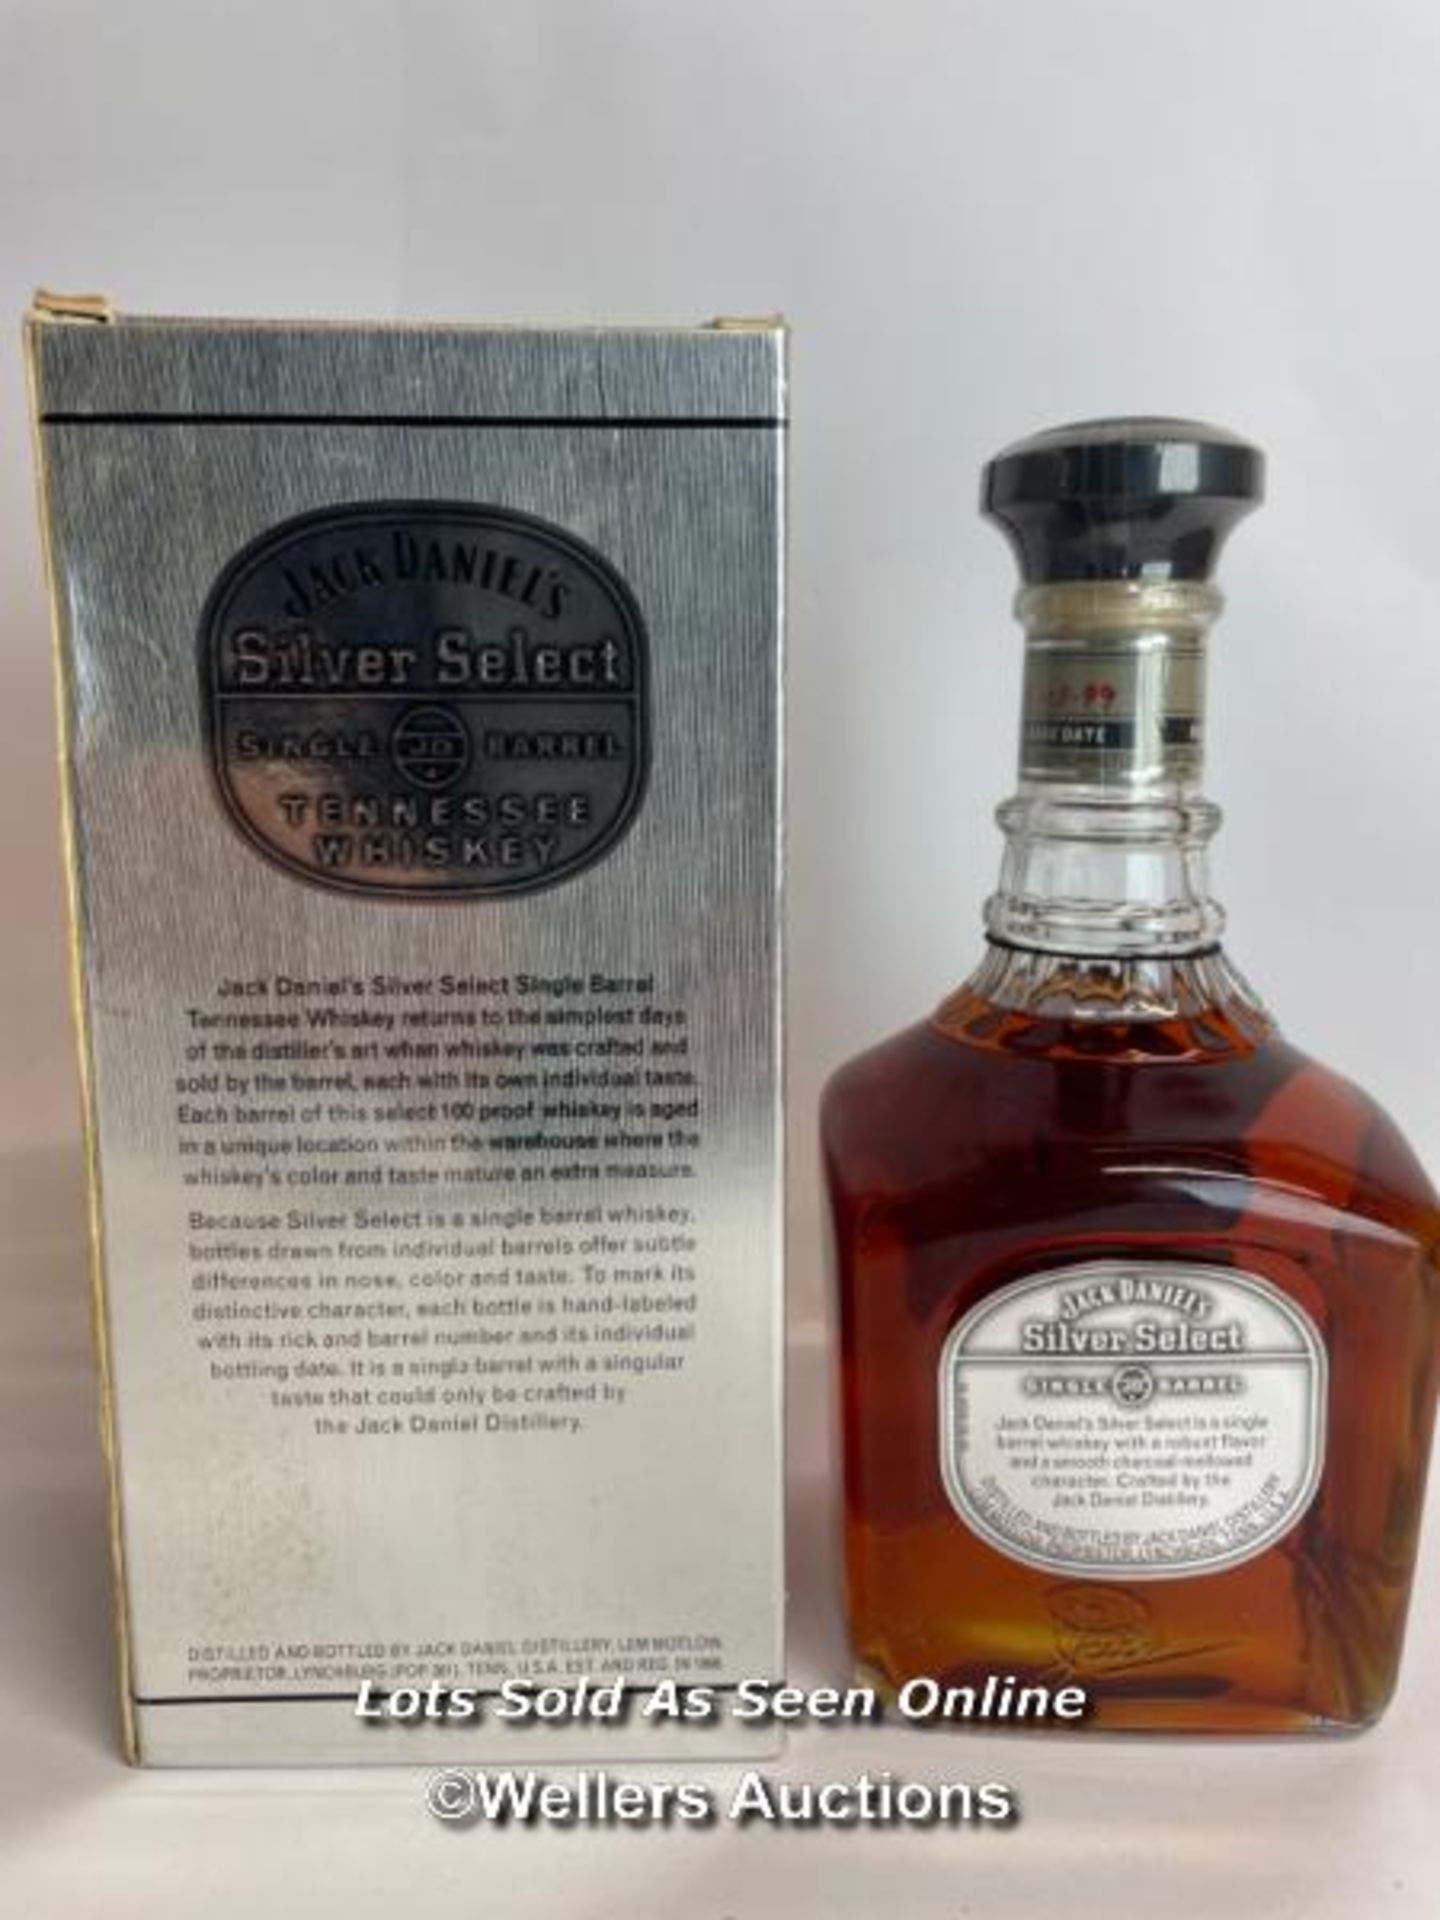 Jack Daniels Silver Select Single Barrel Tennessee Whiskey, Release date: 11-03-99, Barrek no: 9- - Bild 3 aus 8